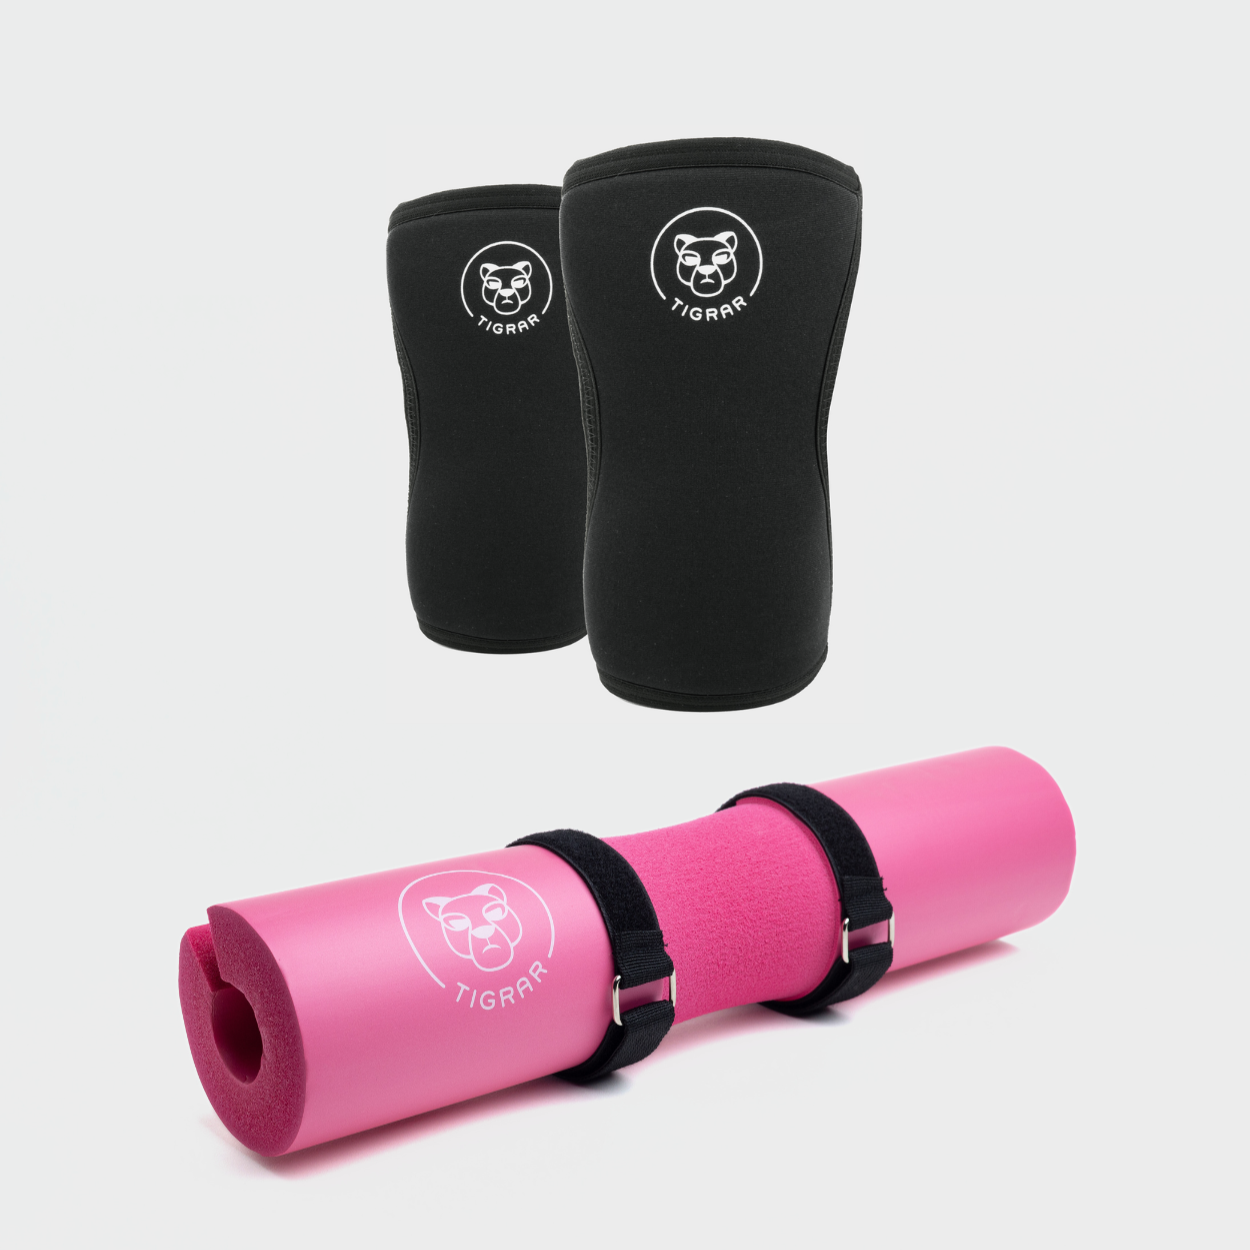 Tigrar fitness set met zwarte knee sleeves en een opvallende roze barbell pad, ideaal voor zowel stijl als bescherming tijdens trainingen.